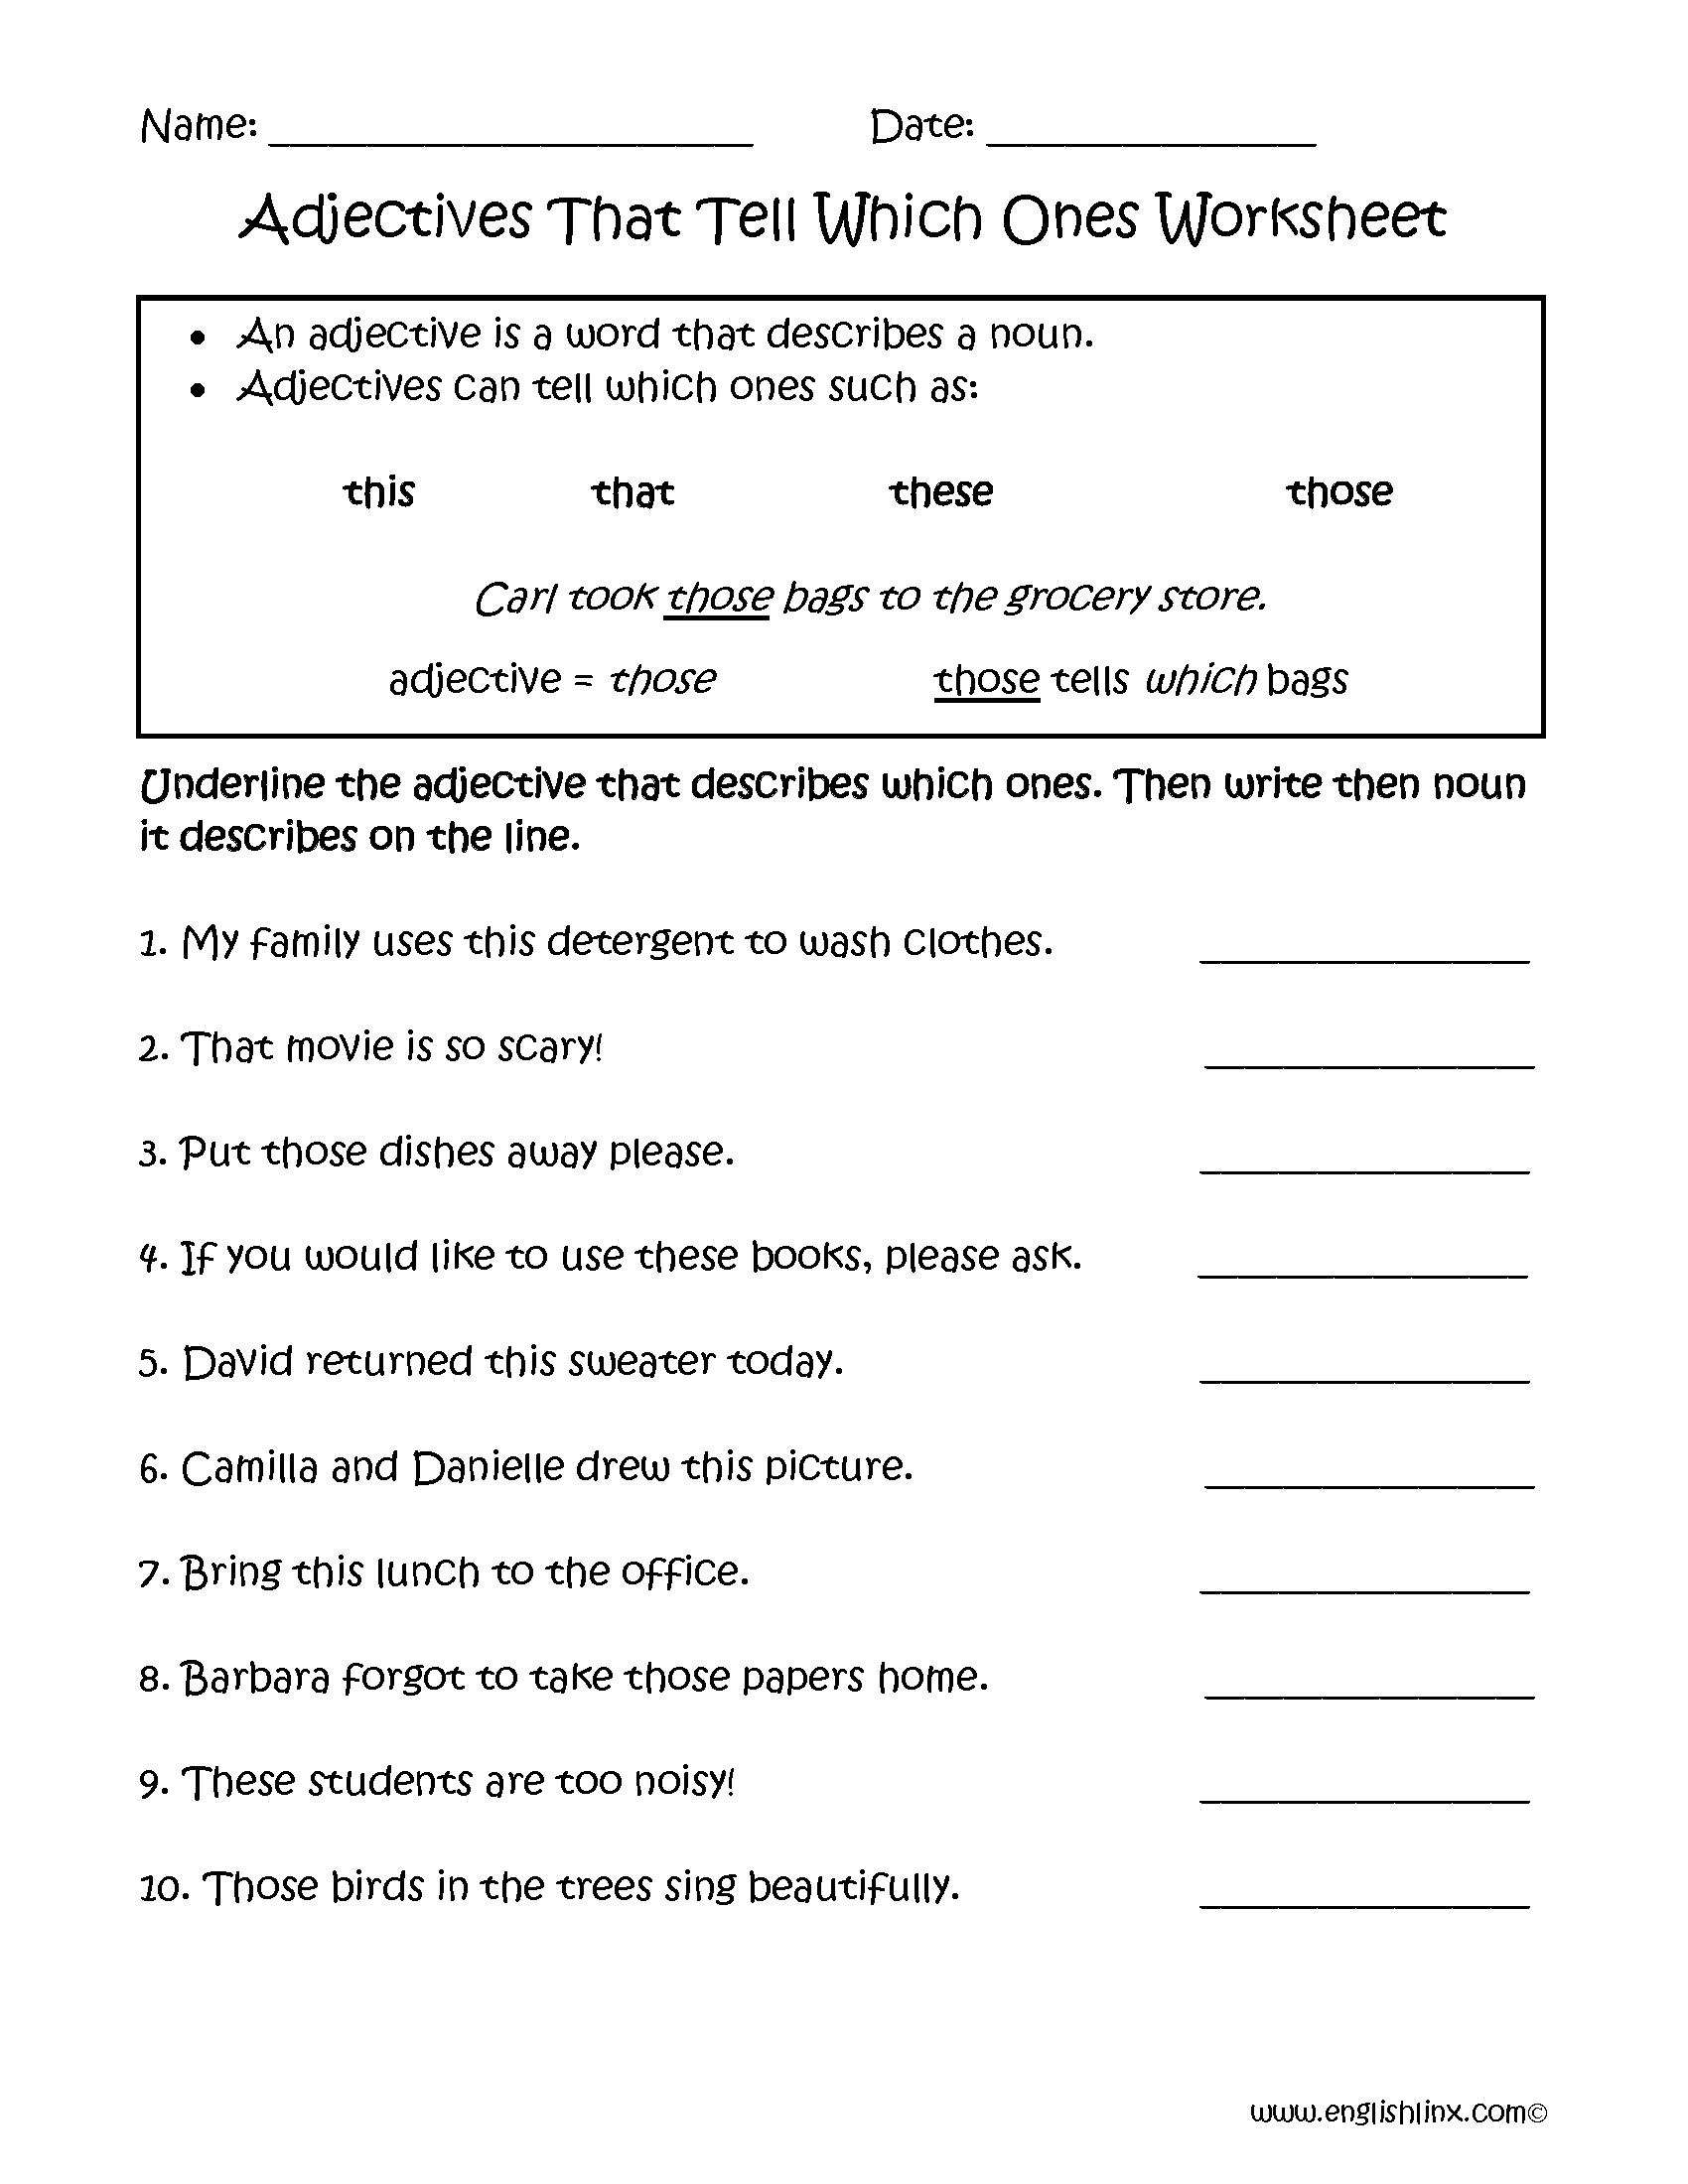 adjectives recognition worksheet